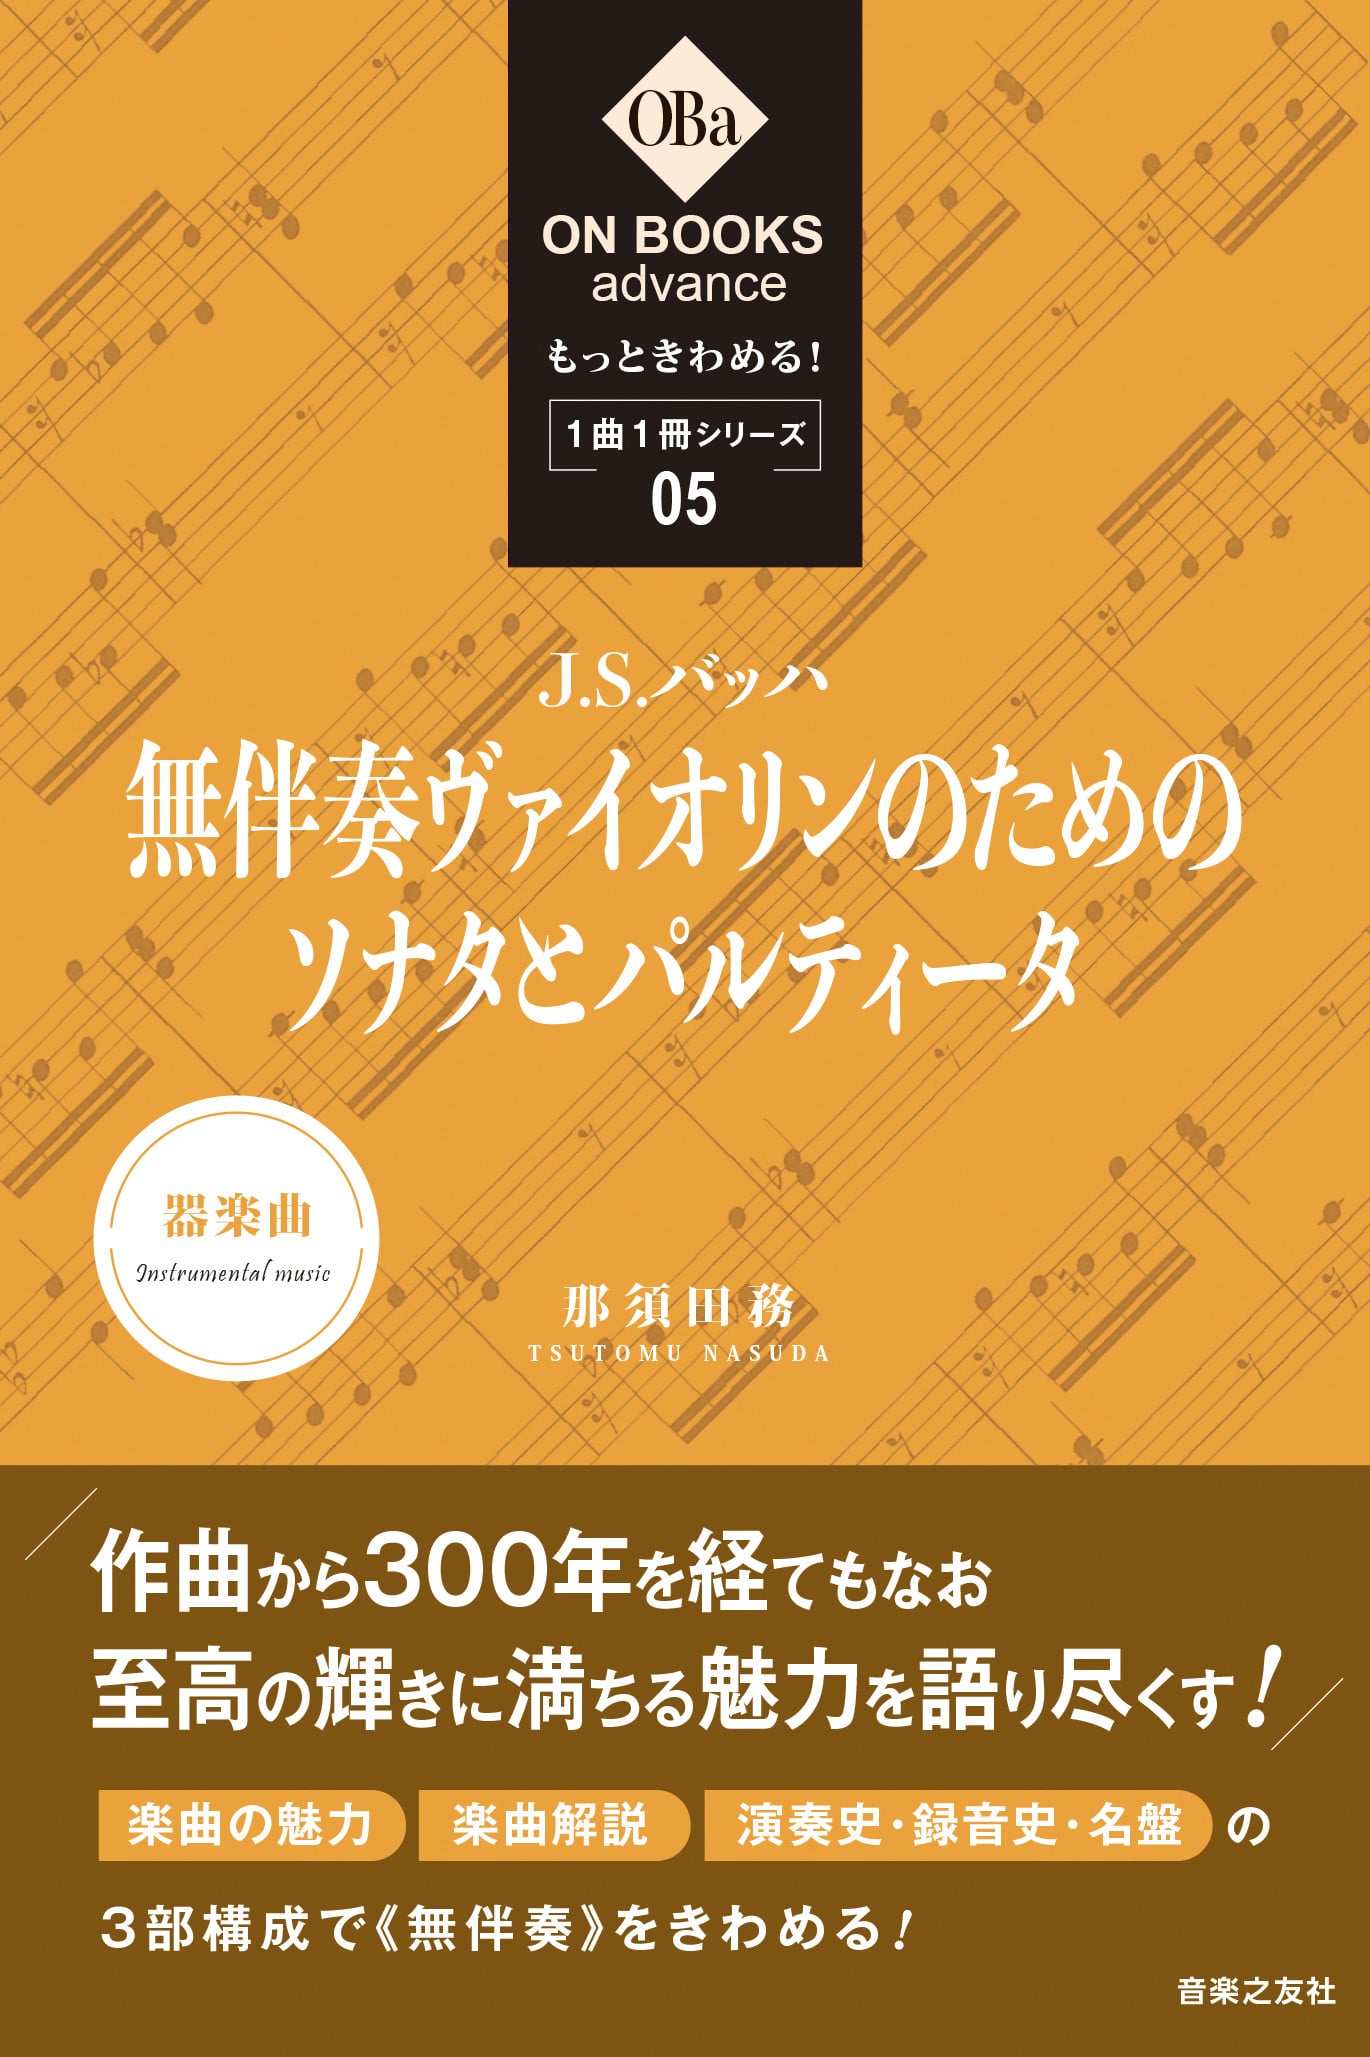 那須田務 / もっときわめる! 1曲1冊シリーズ5. - J.S.バッハ:「無伴奏ヴァイオリンのためのソナタとパルティータ」